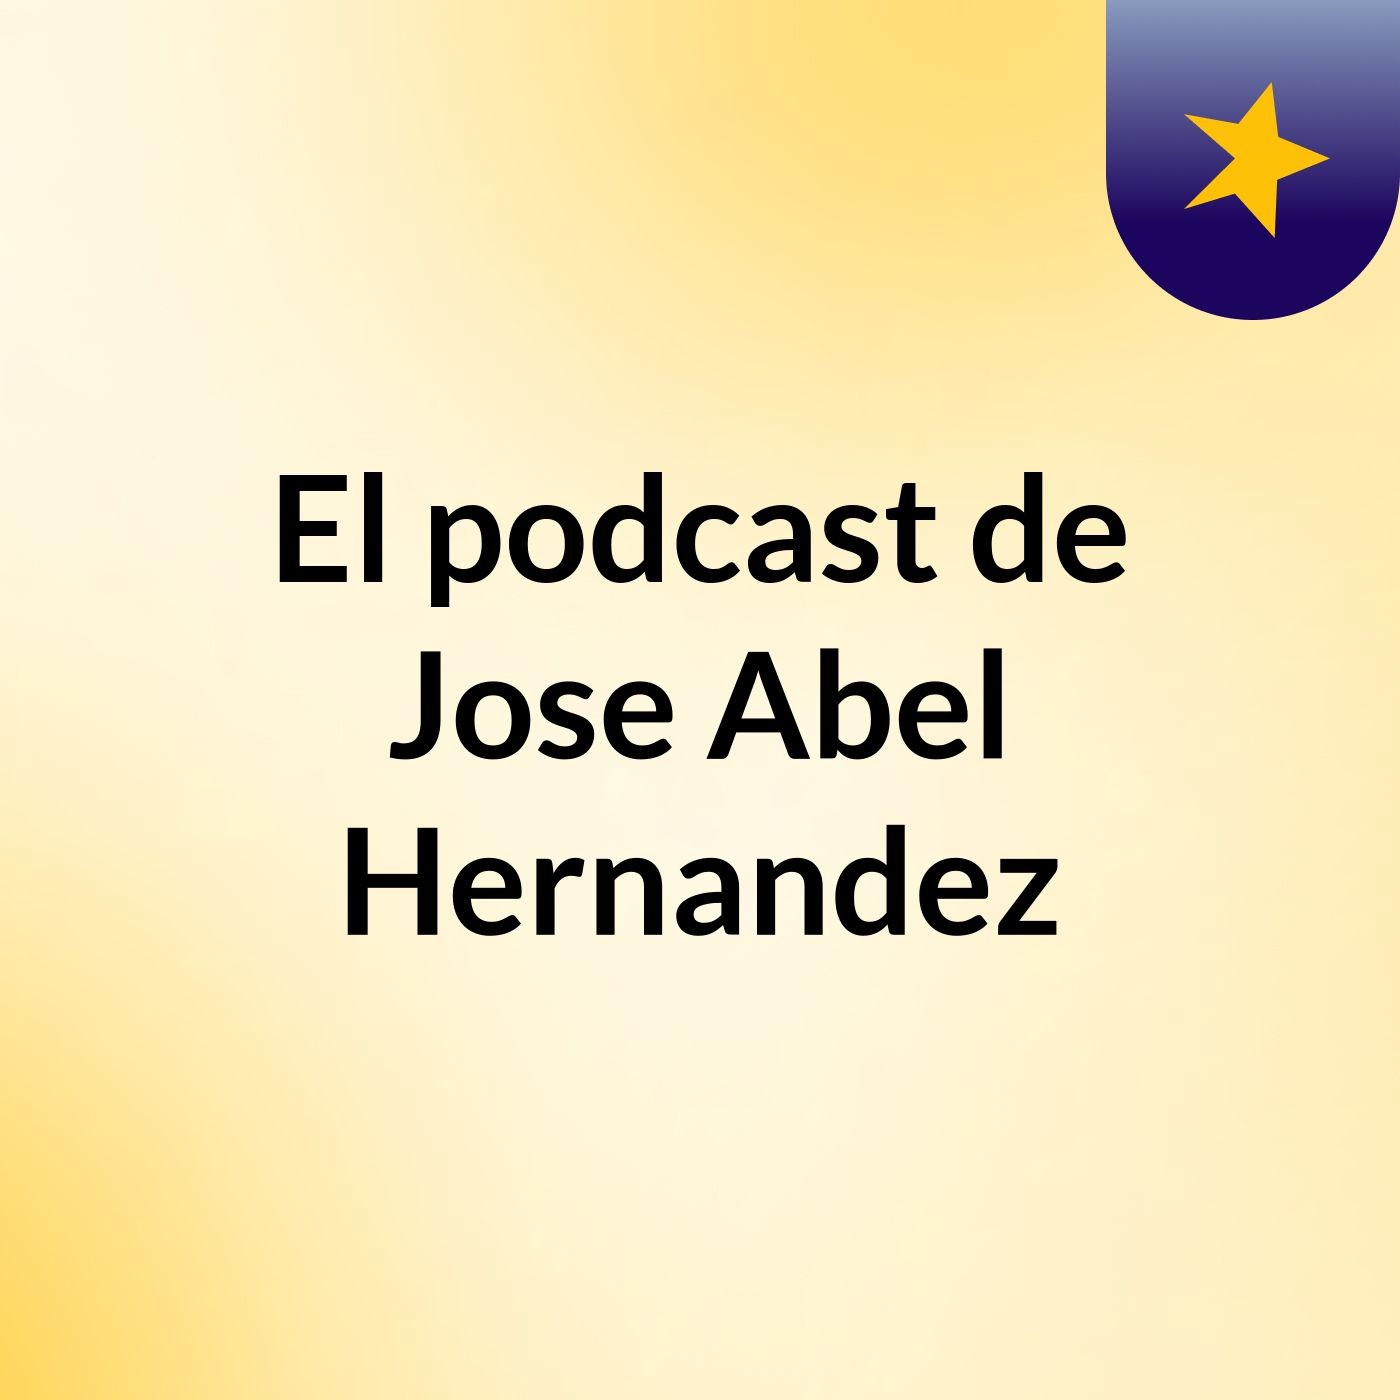 Episodio 3 - El podcast de Jose Abel Hernandez